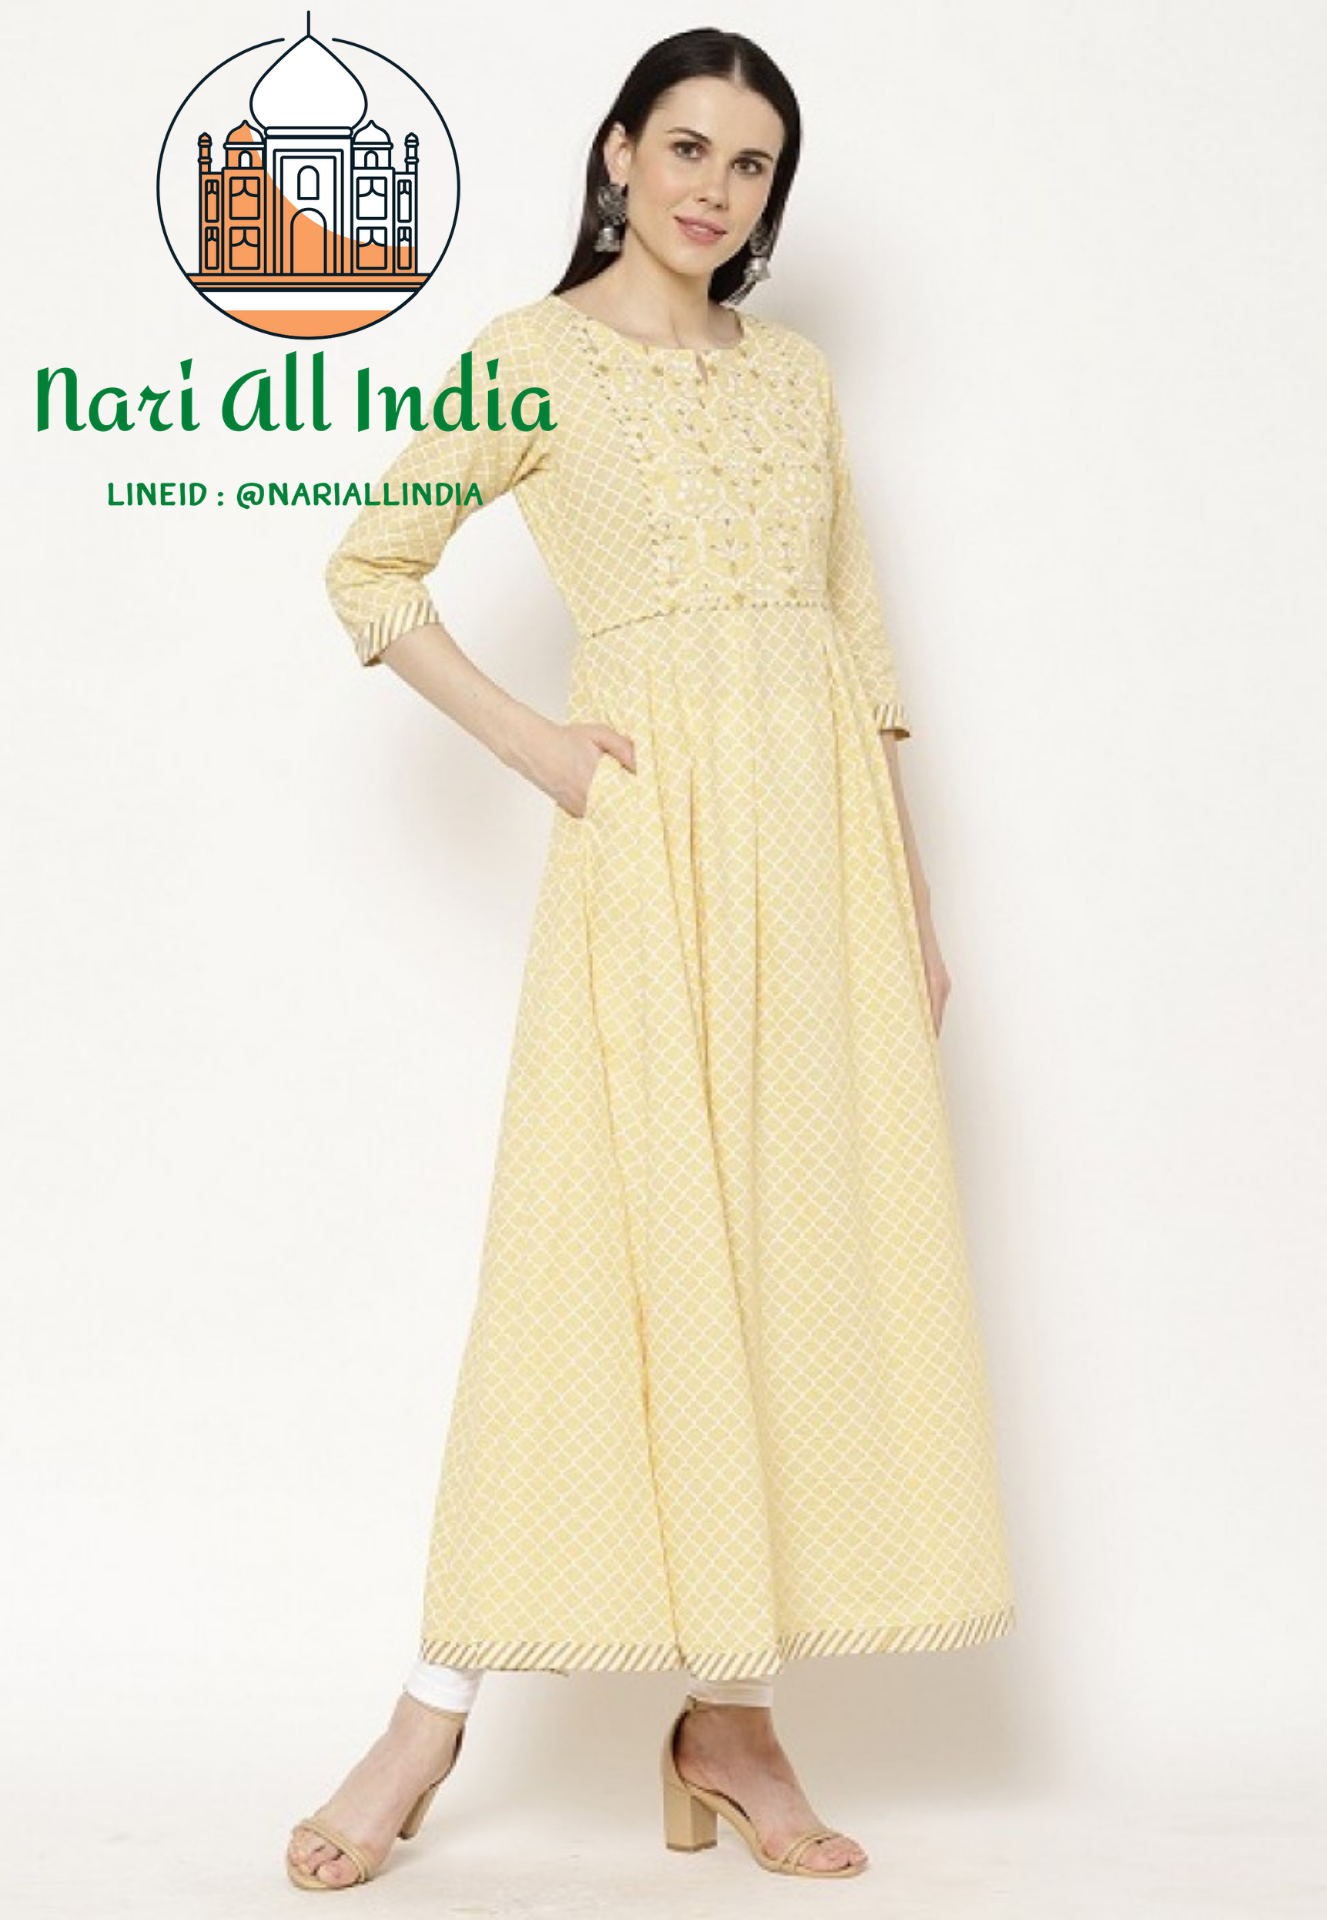 Clothing of India